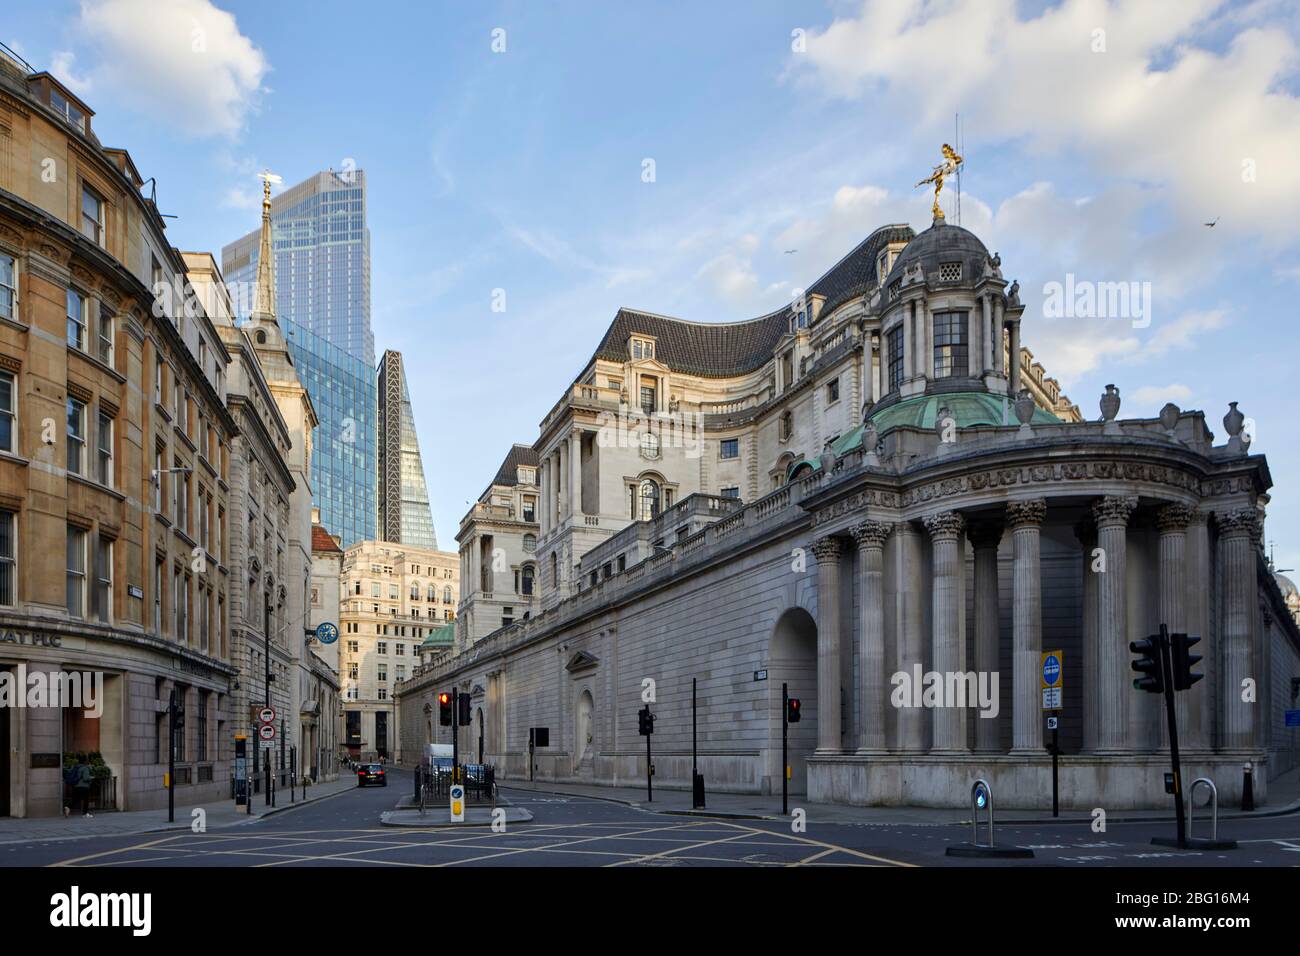 Zone déserte vide de Lothbury Street avec la Banque d'Angleterre pendant les déplacements restreints de Coronavirus COVID-19, verrouillage de quarantaine dans la ville de Londres Banque D'Images